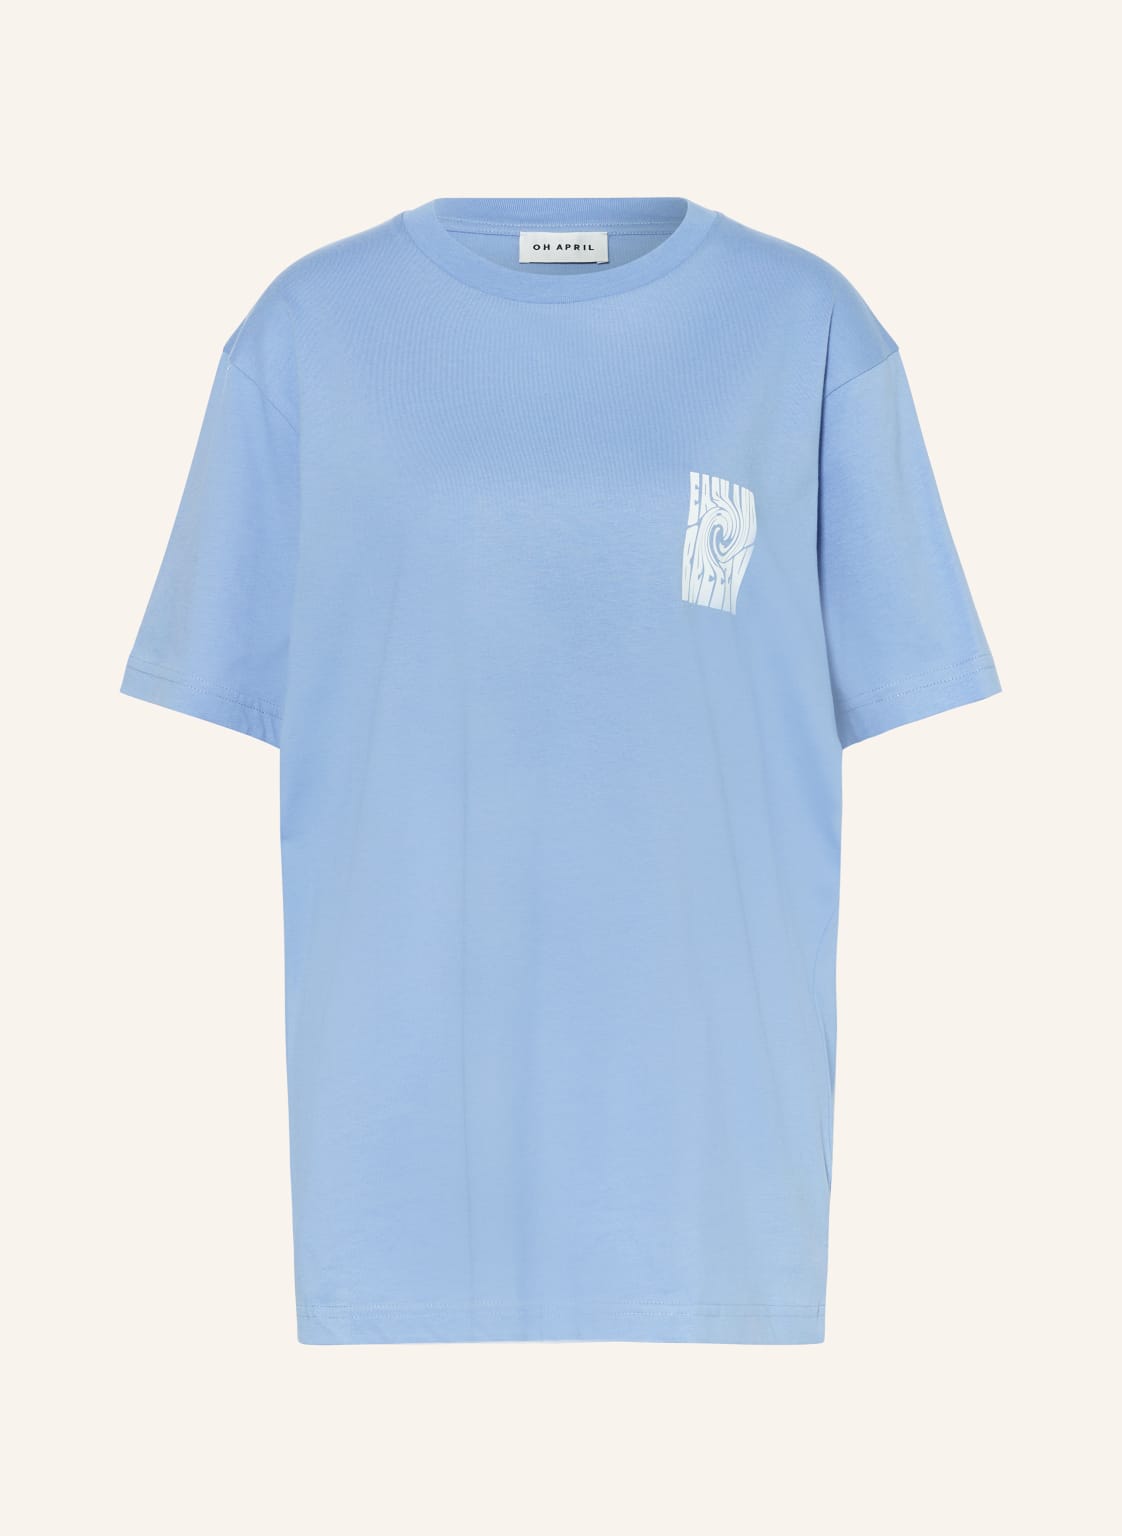 Oh April T-Shirt Boyfriend blau von OH APRIL